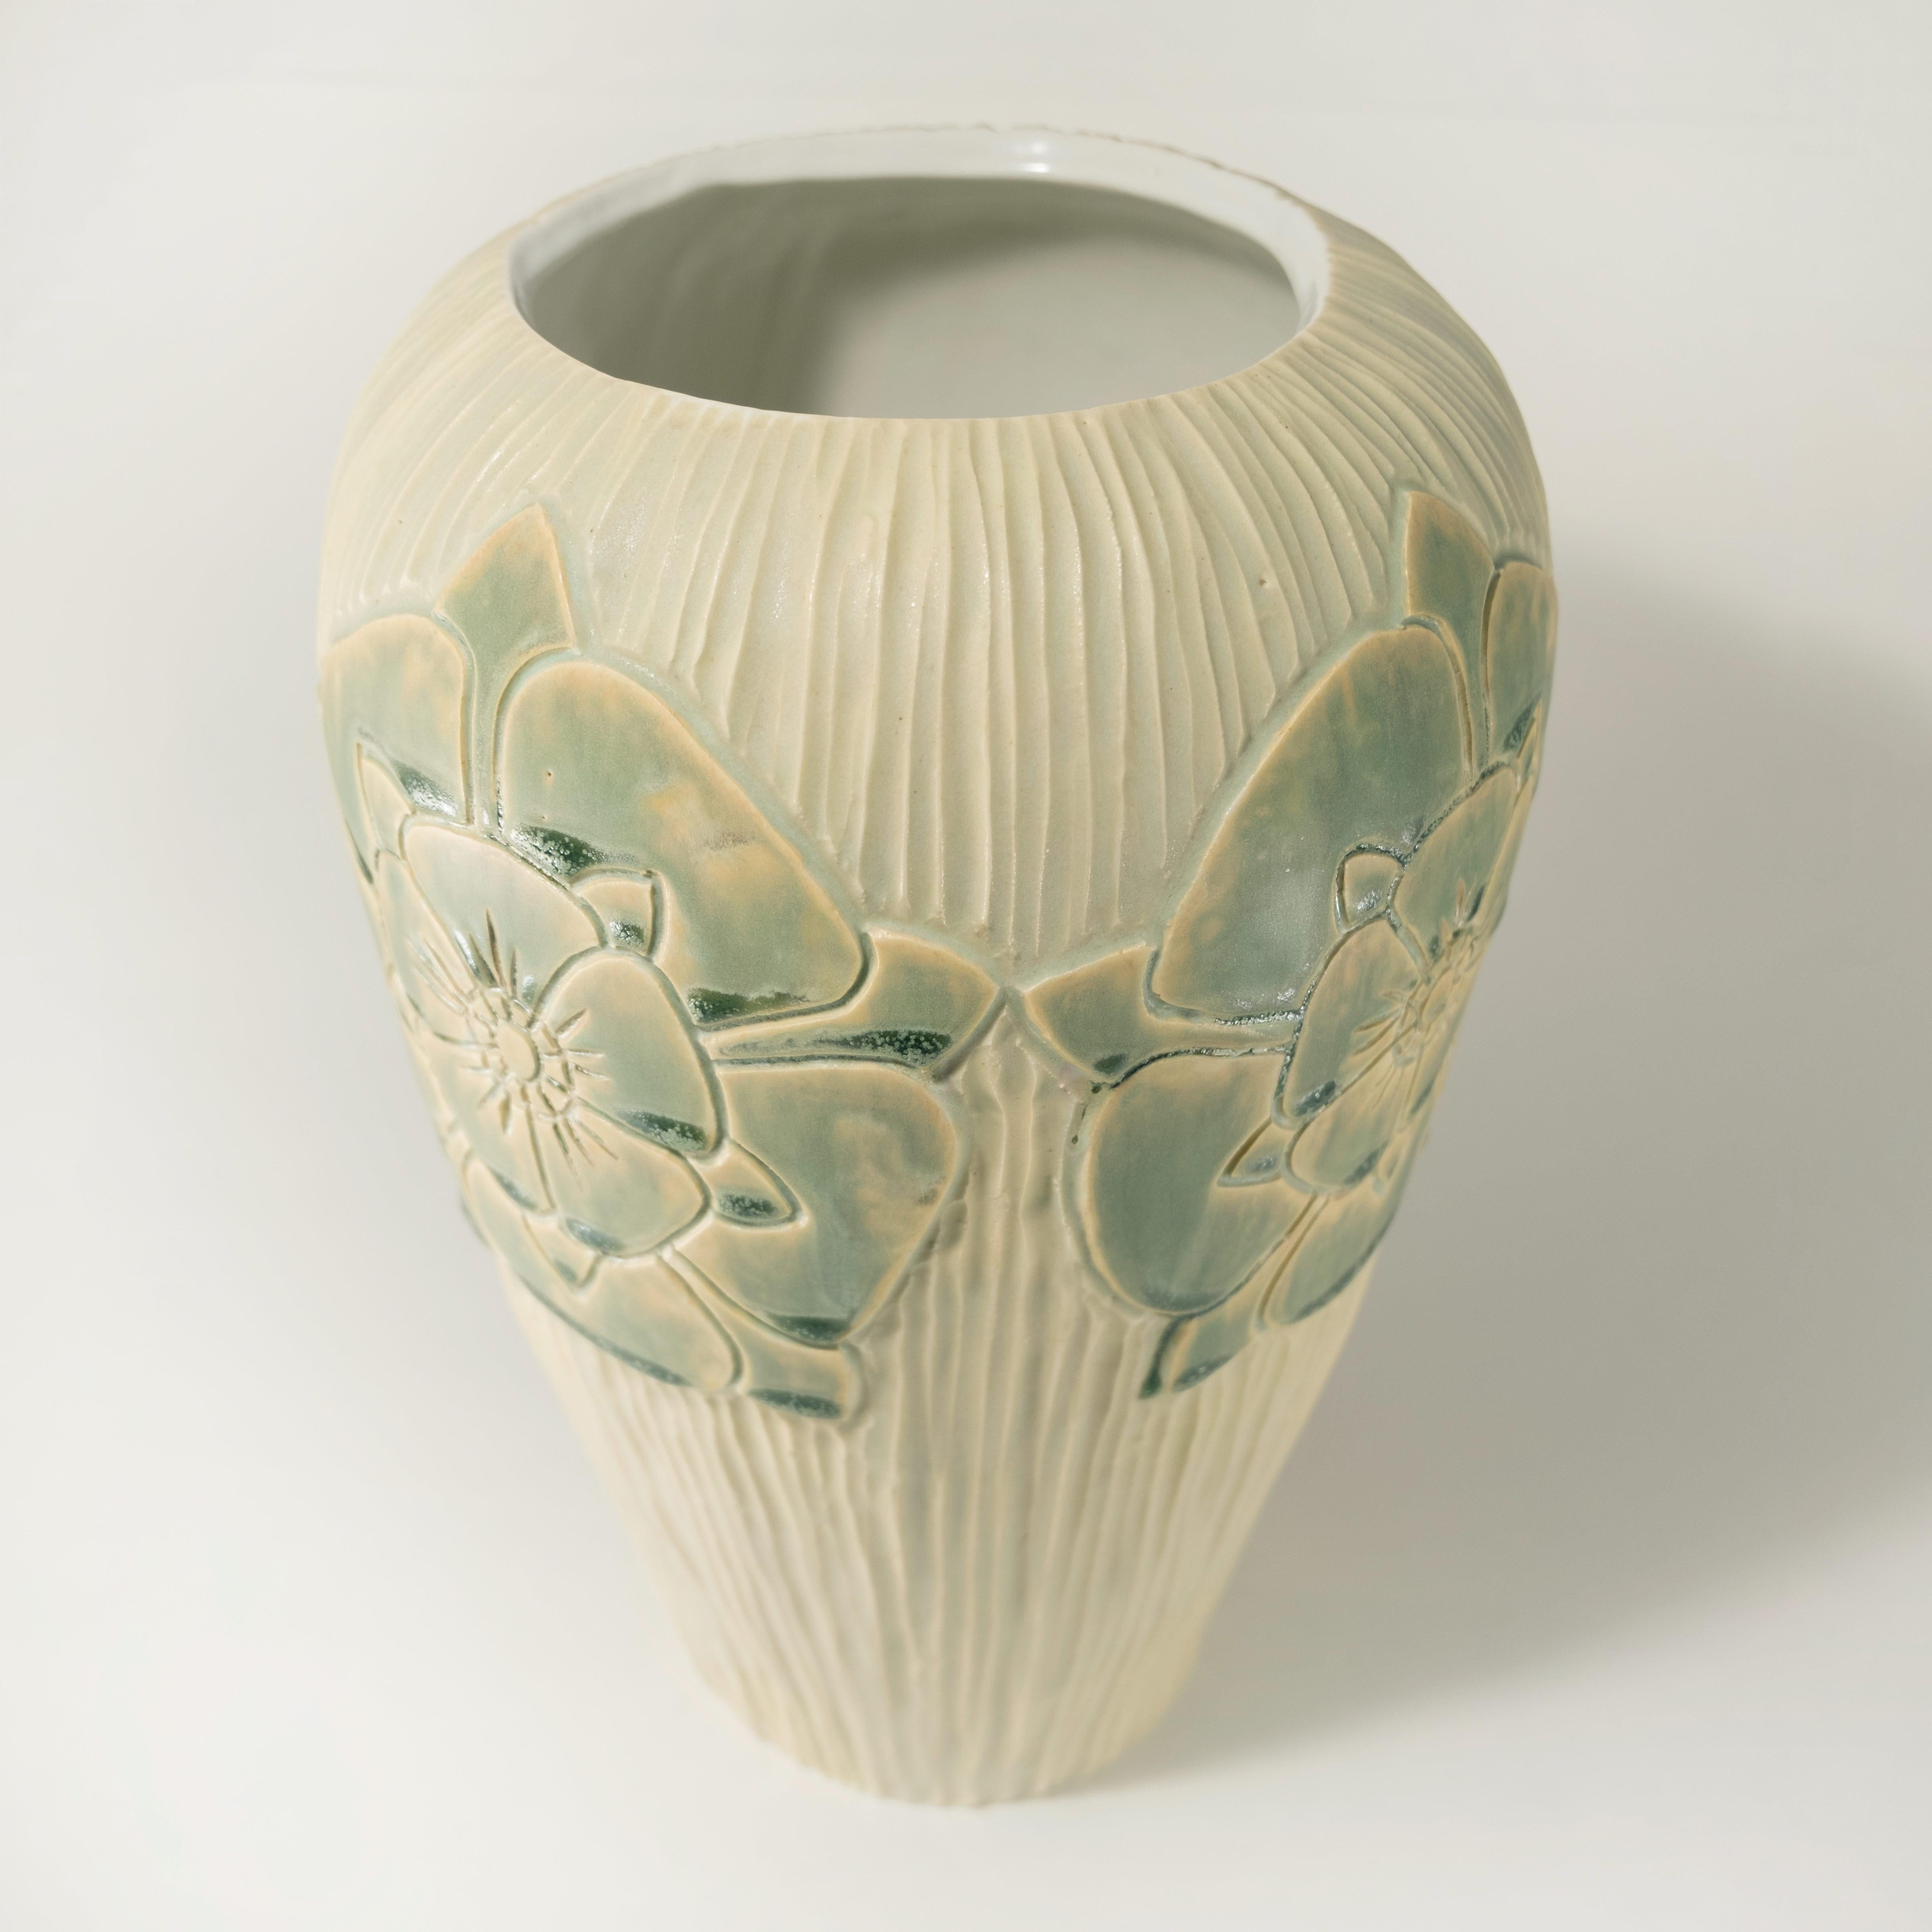 Vase en porcelaine de style Arts & Crafts à la rose anglaise, sculpté et fabriqué à la main par Christopher Brodie. 
Disponible en multicolore $1050, (tel qu'illustré dans l'image principale)
Le double vert Seafoam, 900 dollars, et le bleu Midnight,